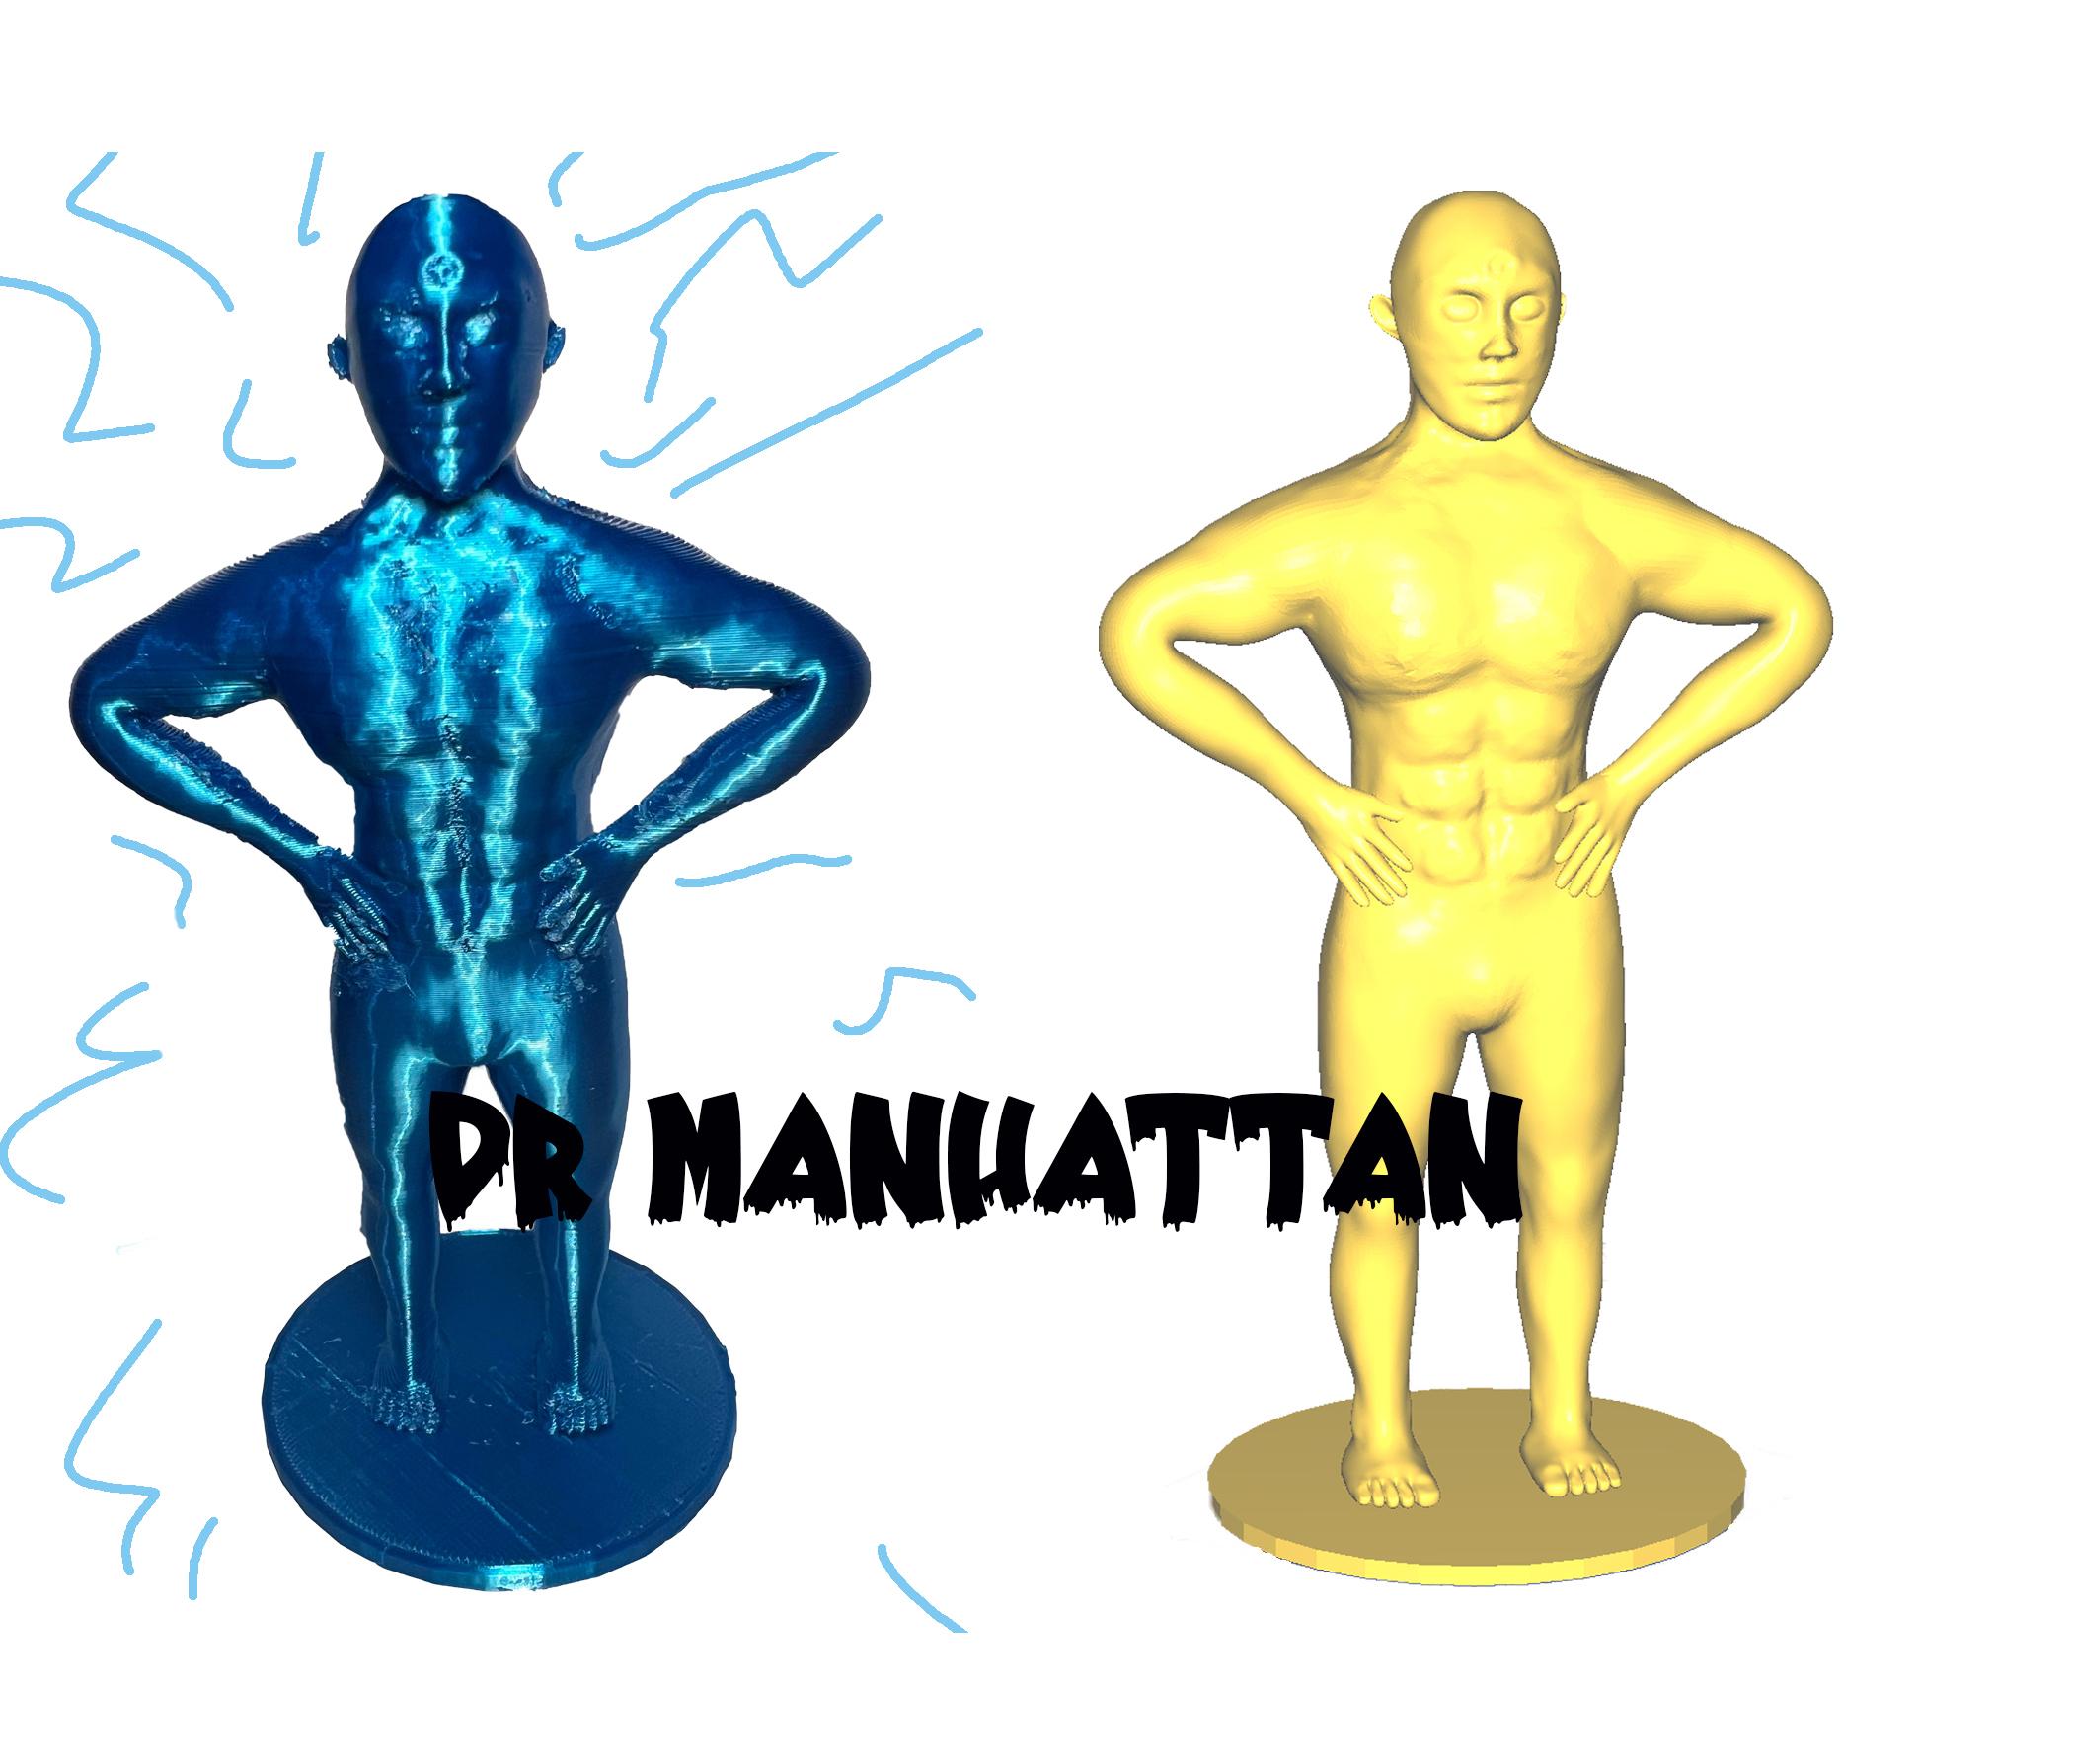 Dr manhattan 3d model